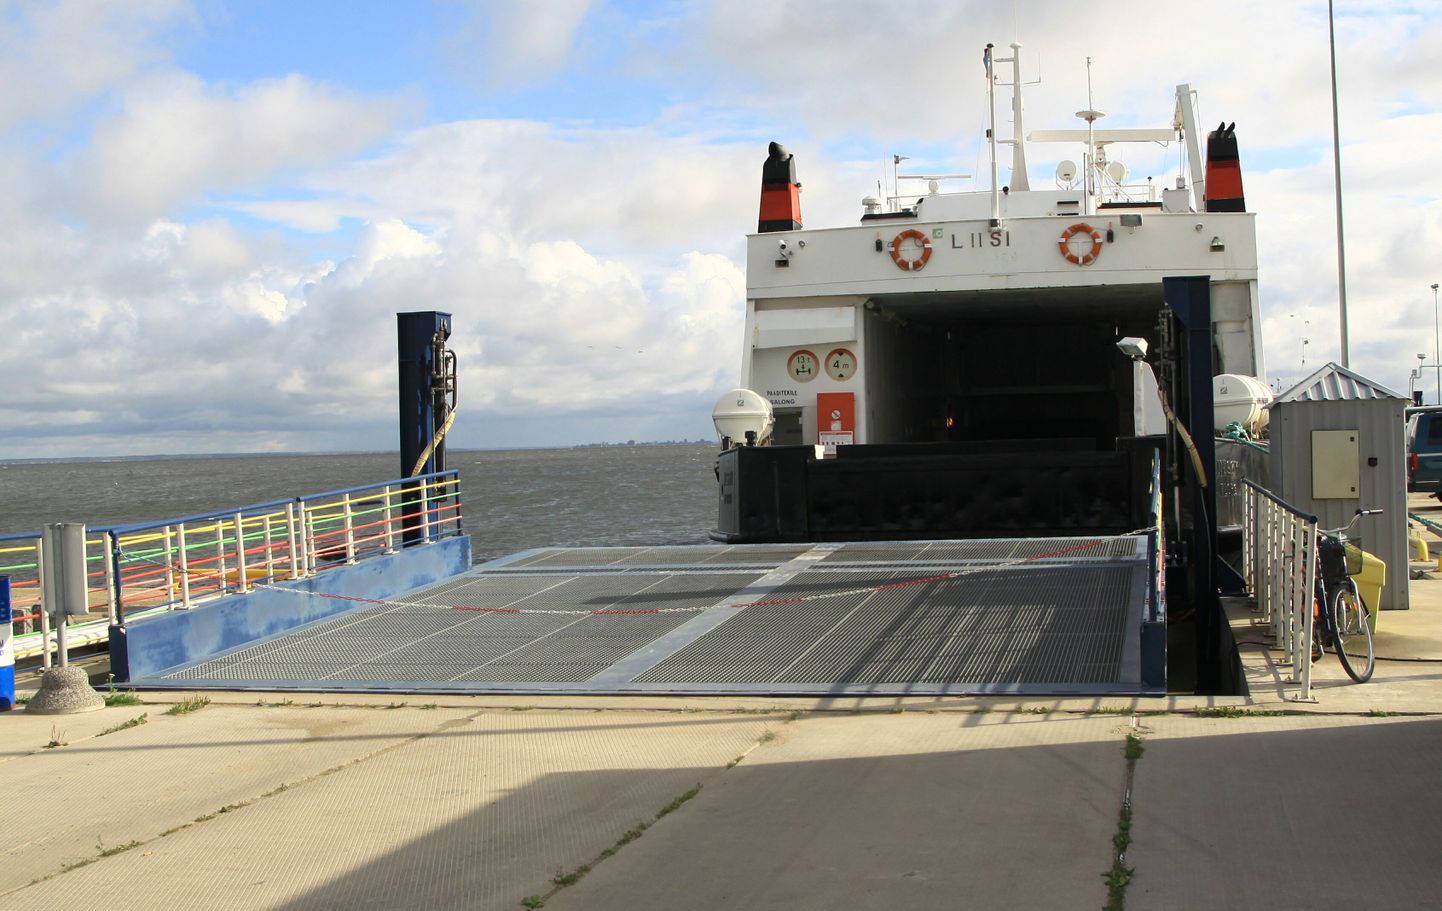 Praegu toimub mandri ja Kihnu saare vahel praamiühendus parvlaevadeag Liisi ja Amalie.